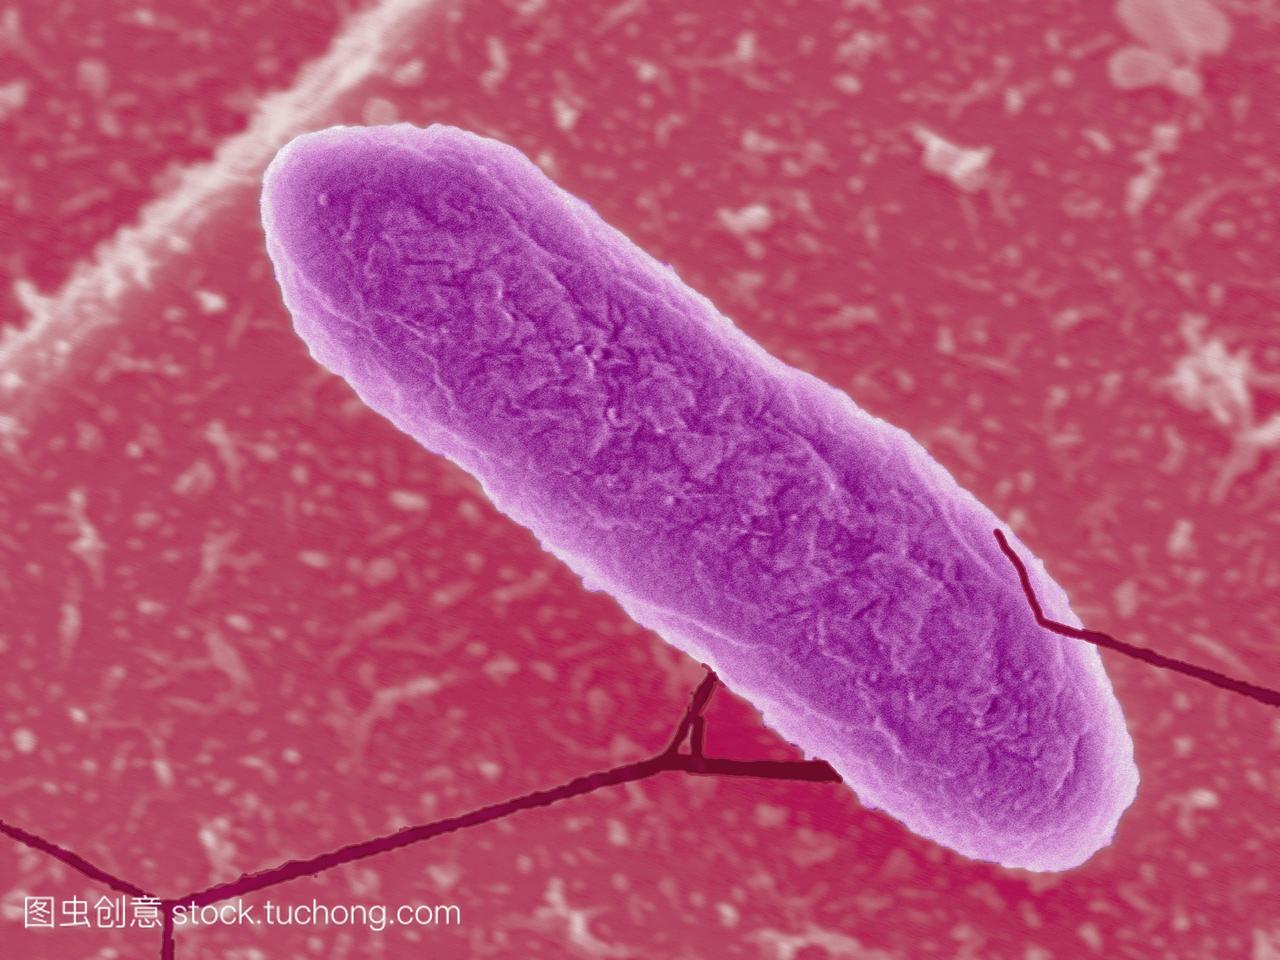 镜sem的一种plesiomonasshigelloides细菌,是人